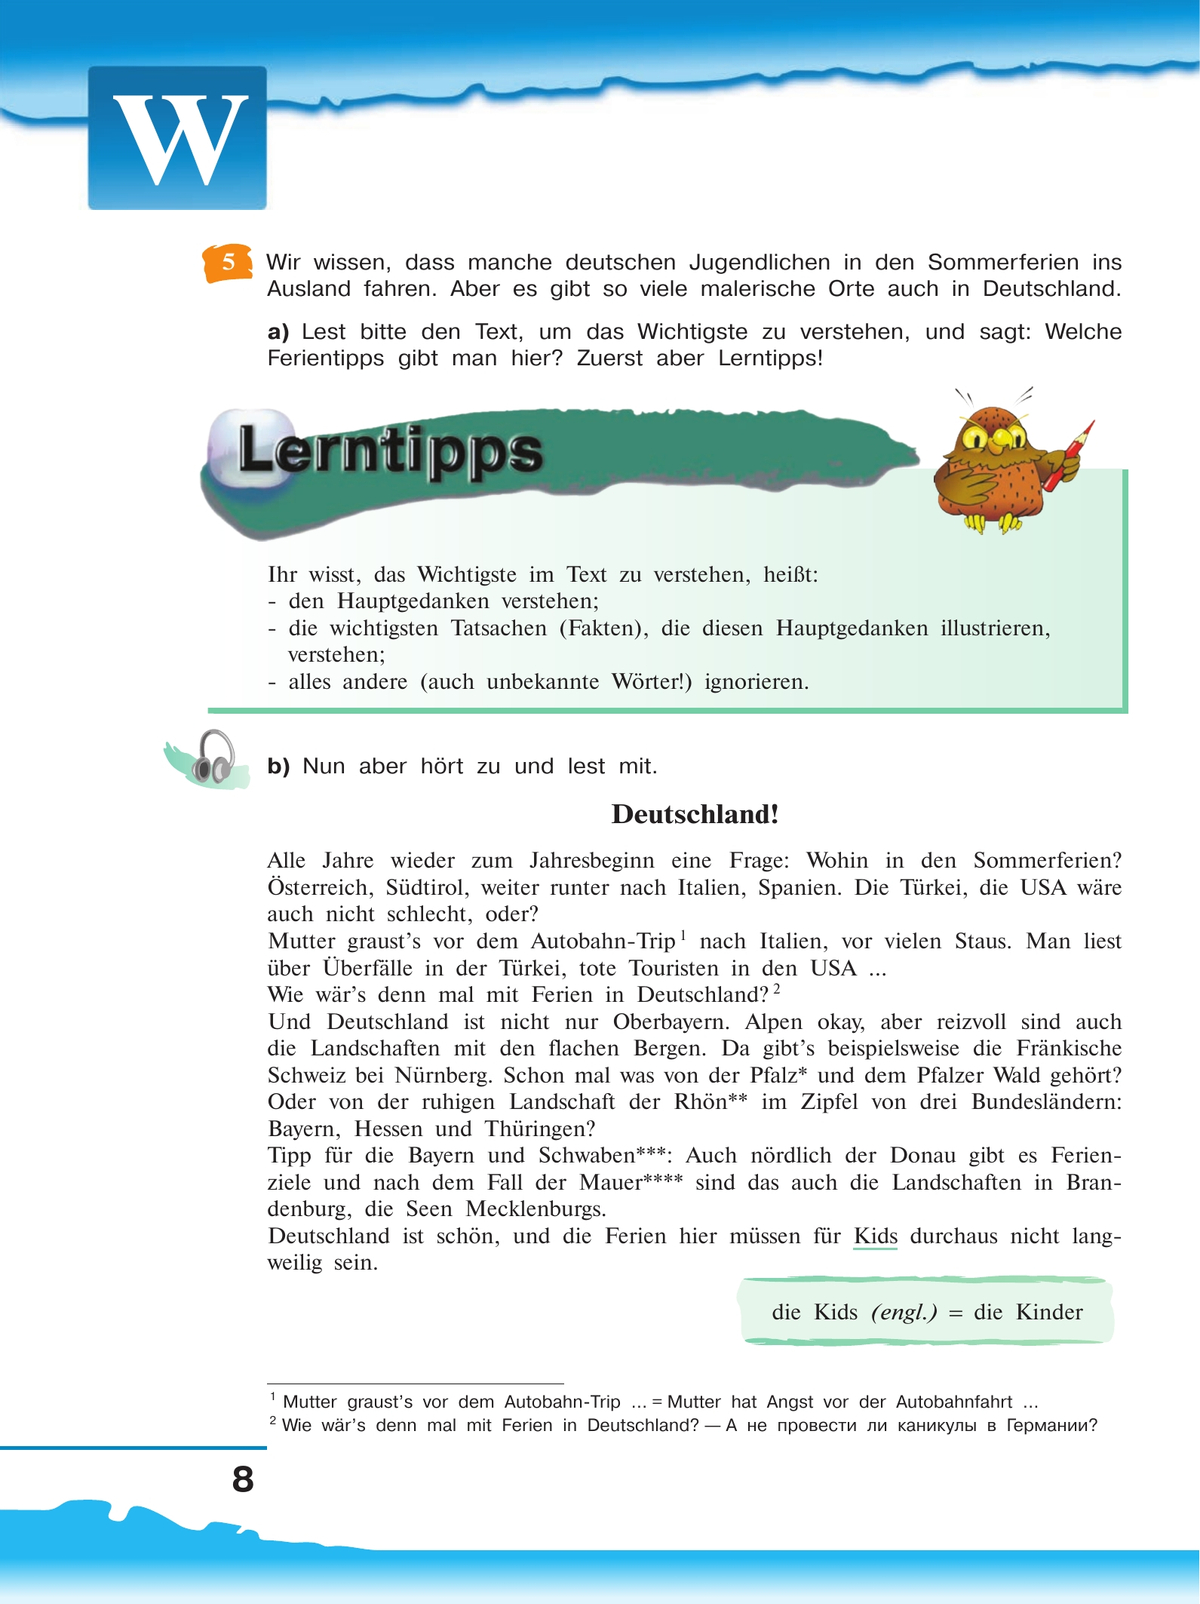 Немецкий язык. 9 класс. Учебник 3